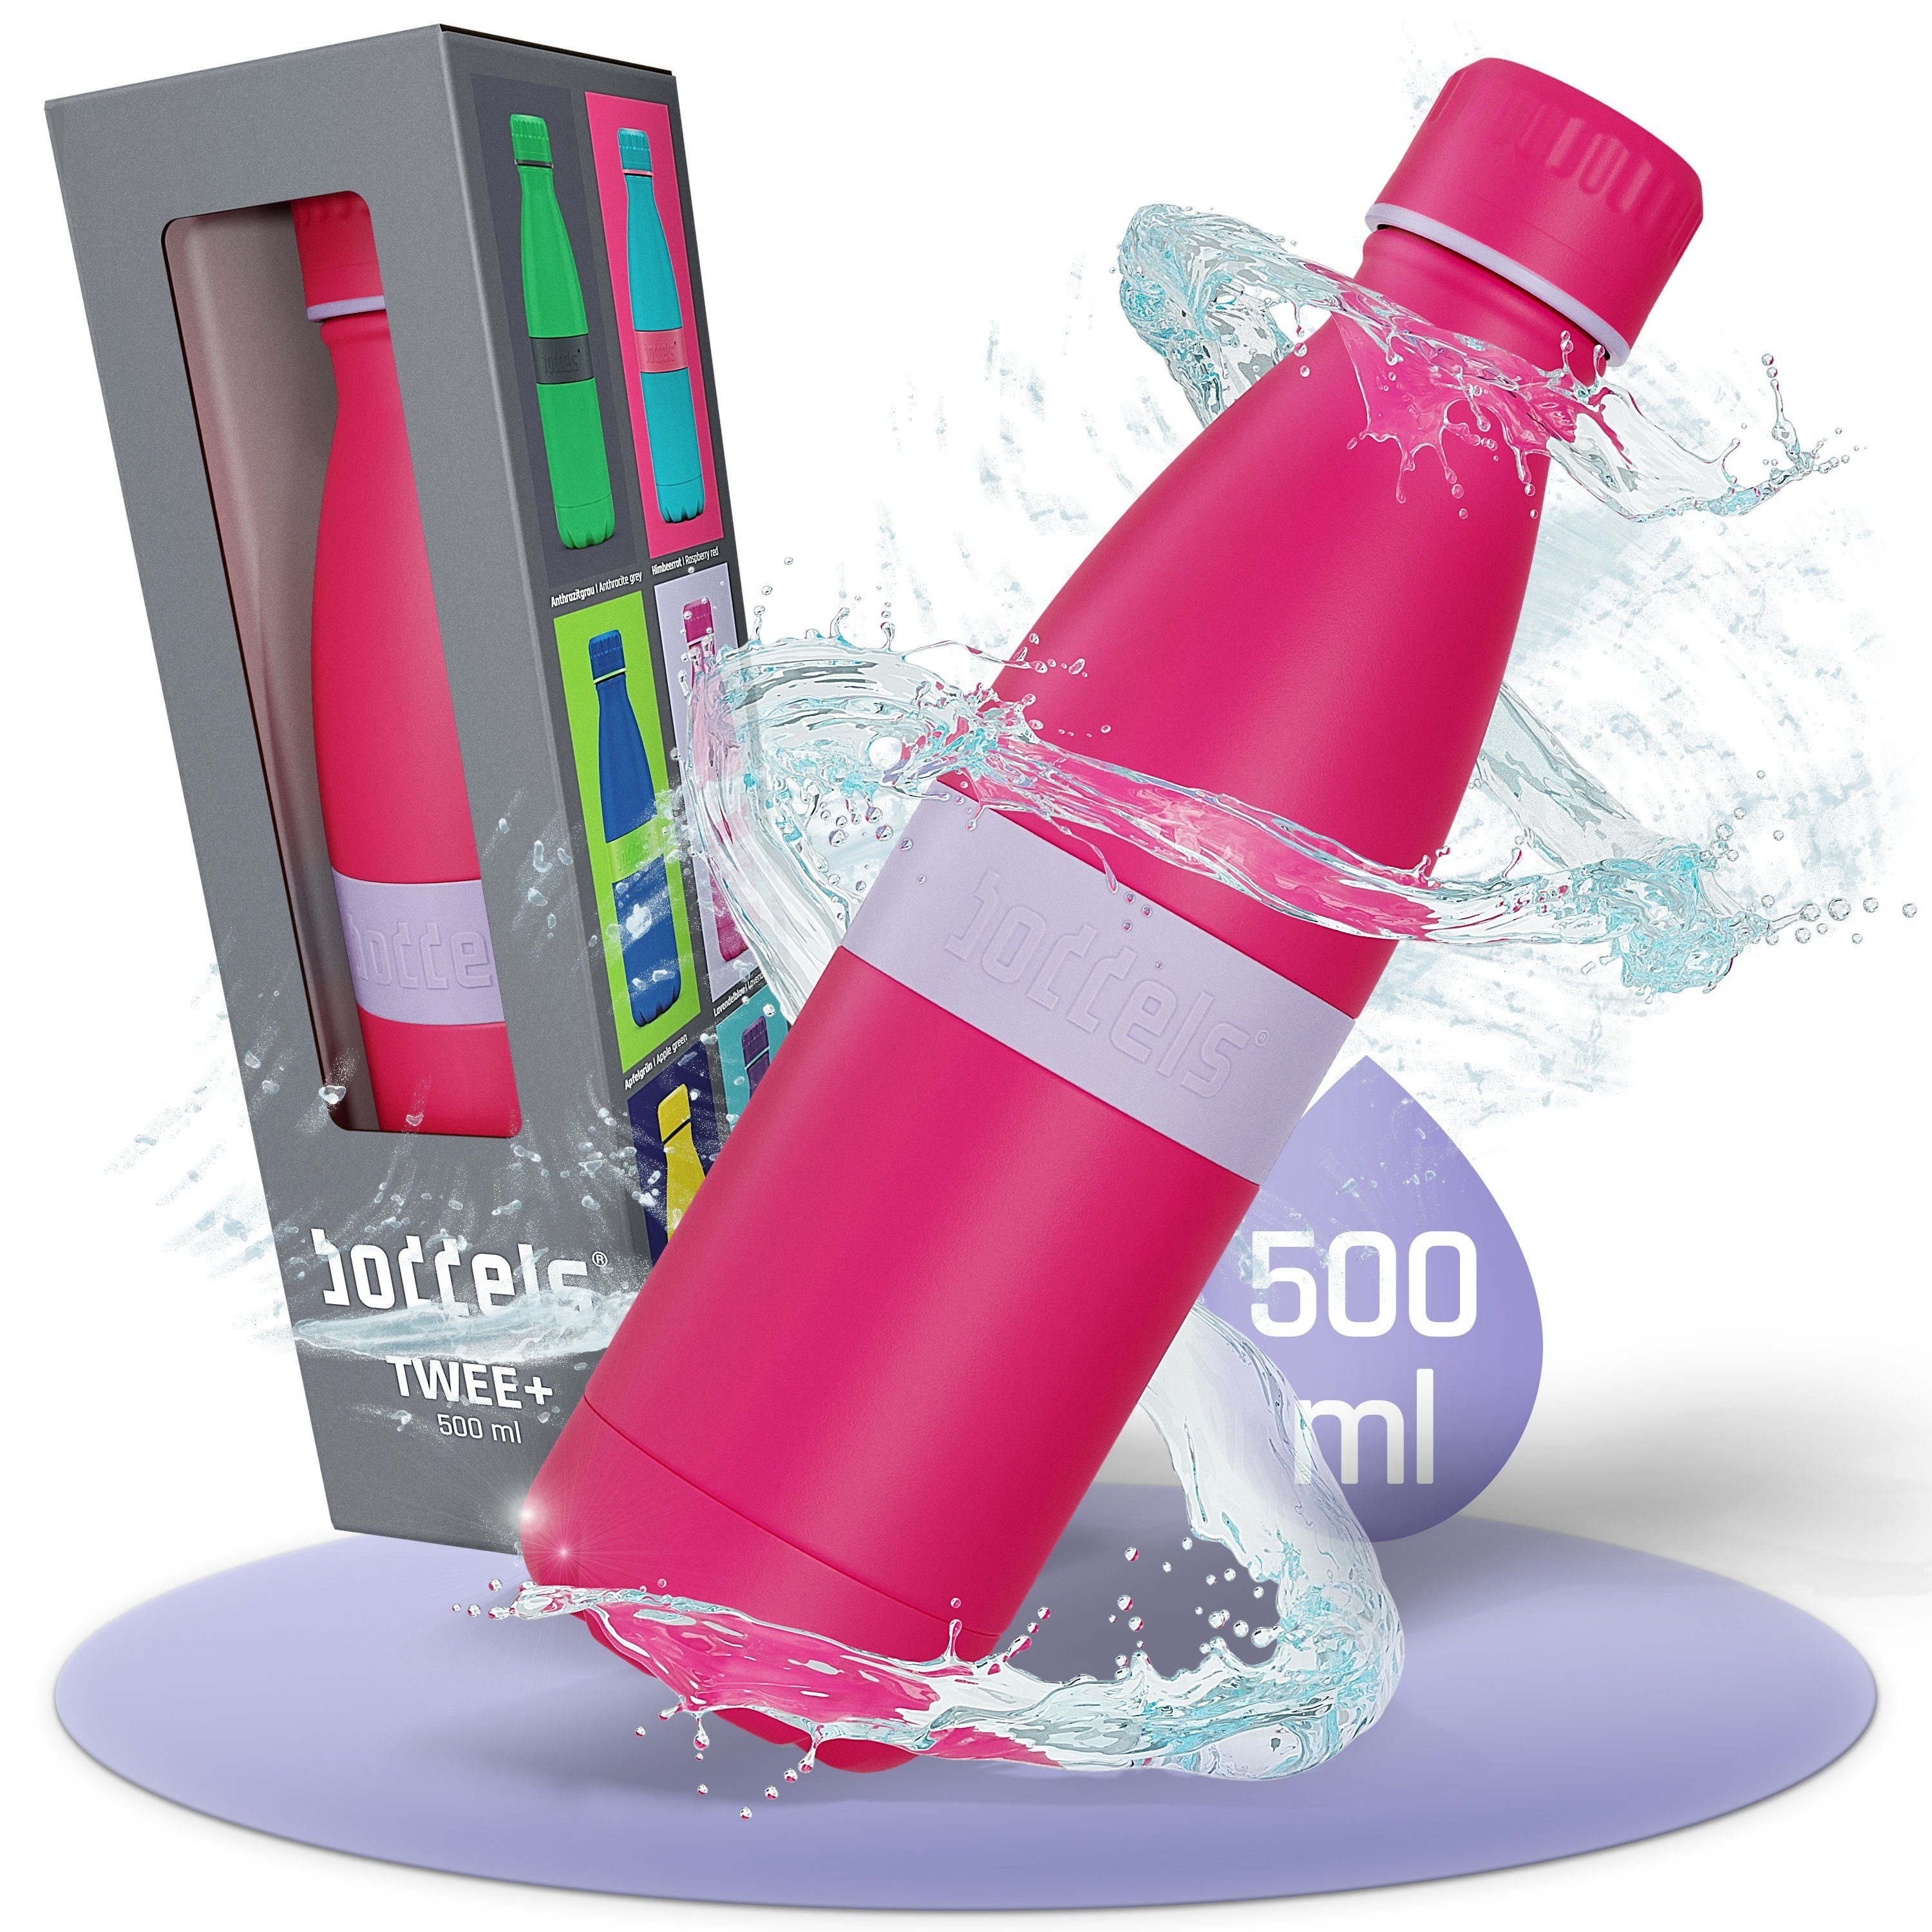 boddels Isolierflasche TWEE+ 500ml - Trinkflasche aus Edelstahl, doppelwandig, auslaufsicher, bruchfest Lavendelblau / Pink